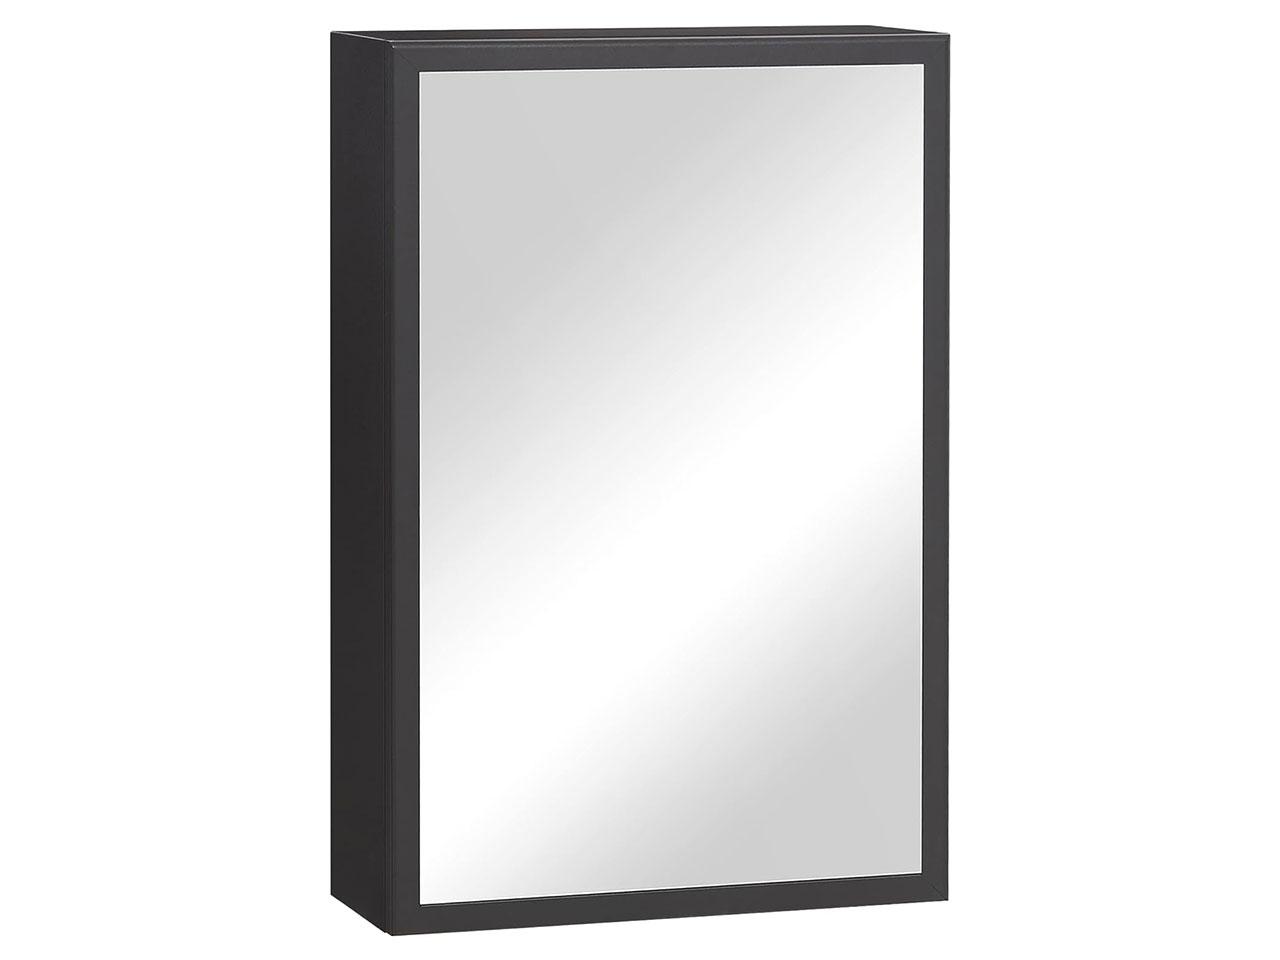 Zrcadlová koupelná skříňka 834-552V00BK, závěsná skříňka, nástěnná skříňka, z ušlechtilé oceli, černá, 40 x 15 x 60 cm